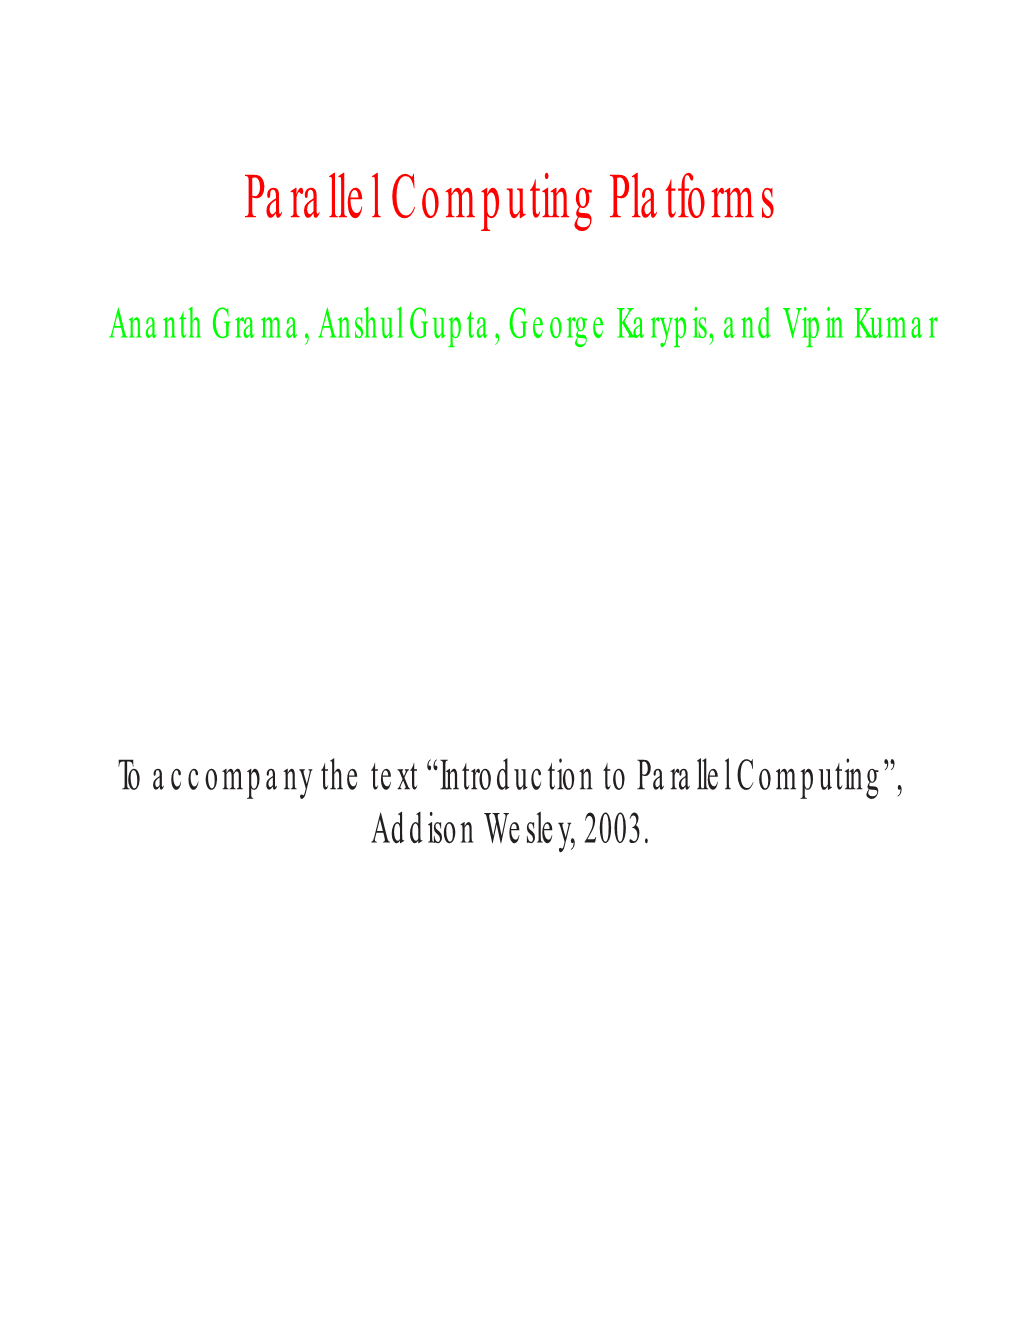 Parallel Computing Platforms